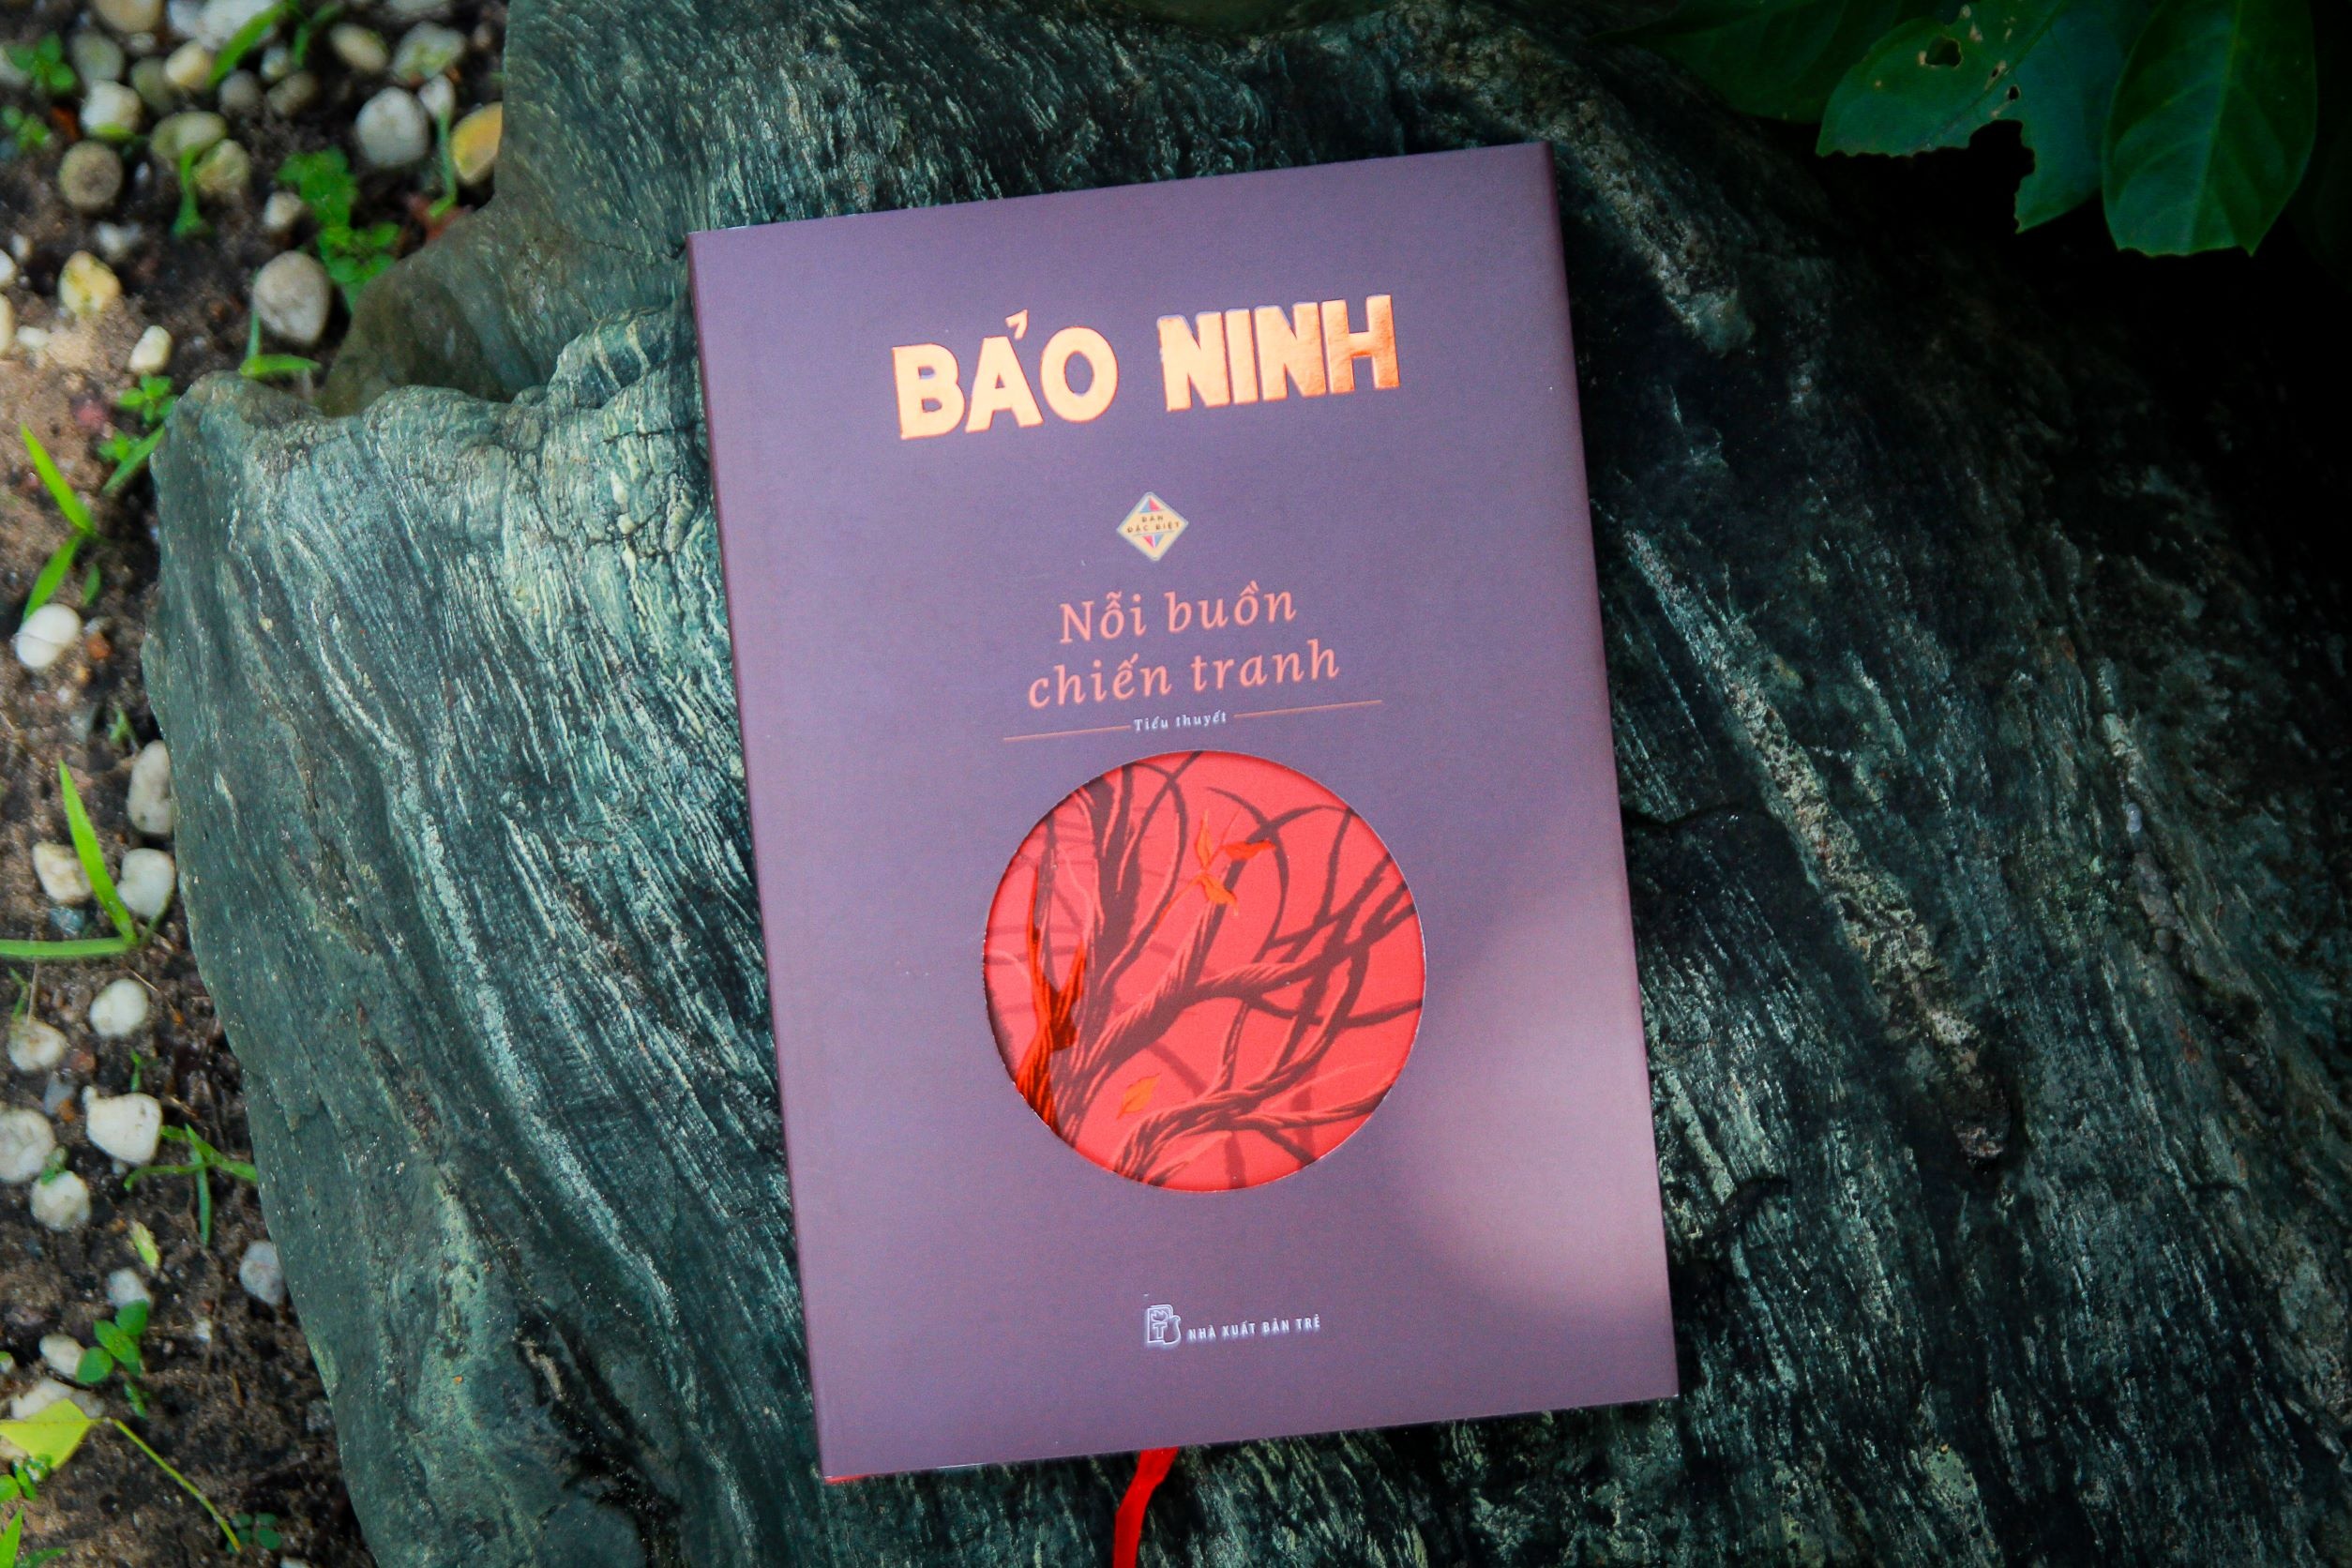 Bộ sách của các nhà văn ở Hà Nội nổi tiếng - ảnh 2